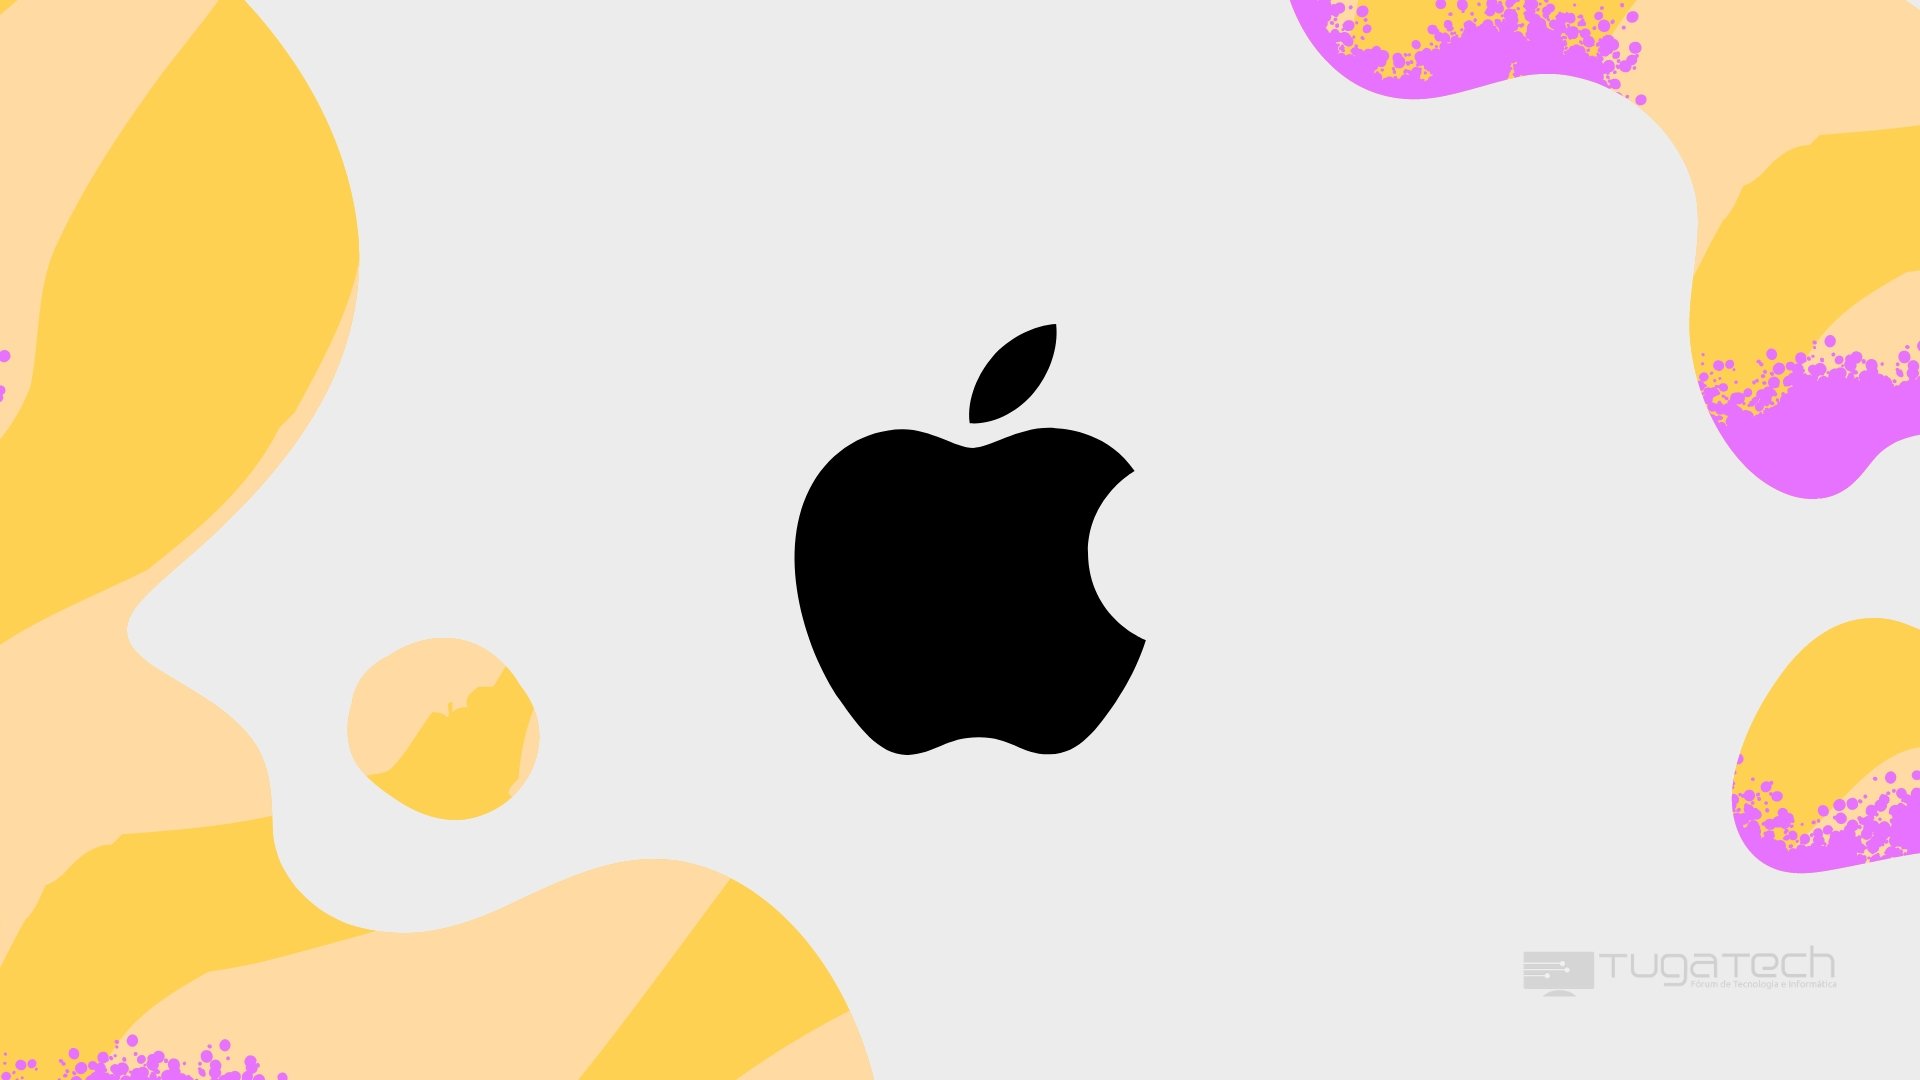 Apple sobre fundo amarelo